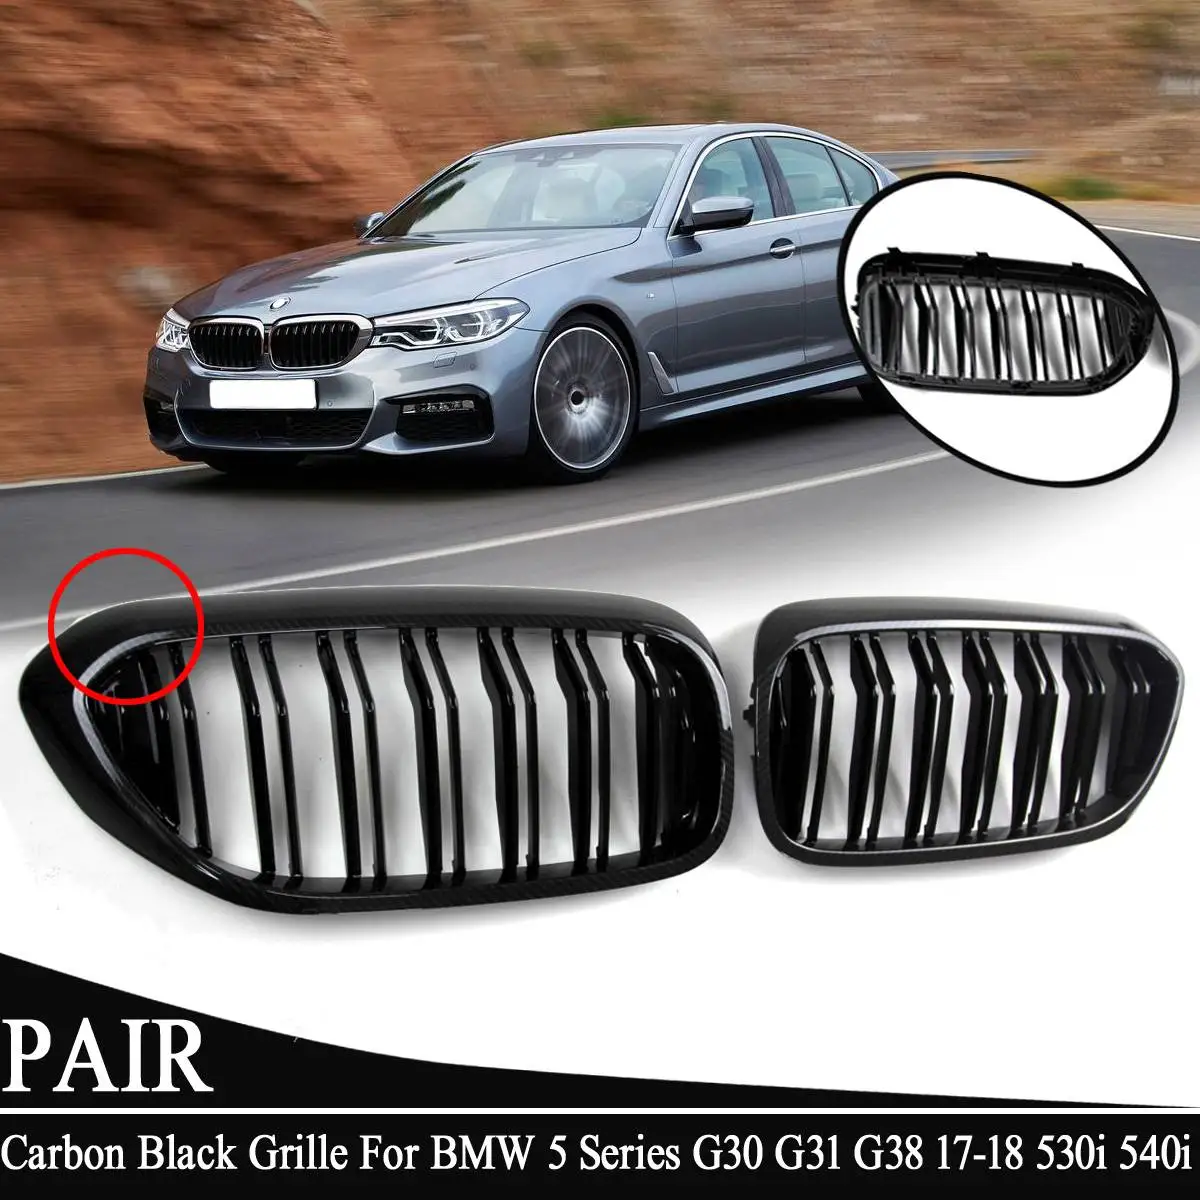 Решетка переднего бампера для BMW 5 серии G30 G31 G38 530i 540i- ABS двойная линия карбоновая черная Замена Передняя решетка для почек